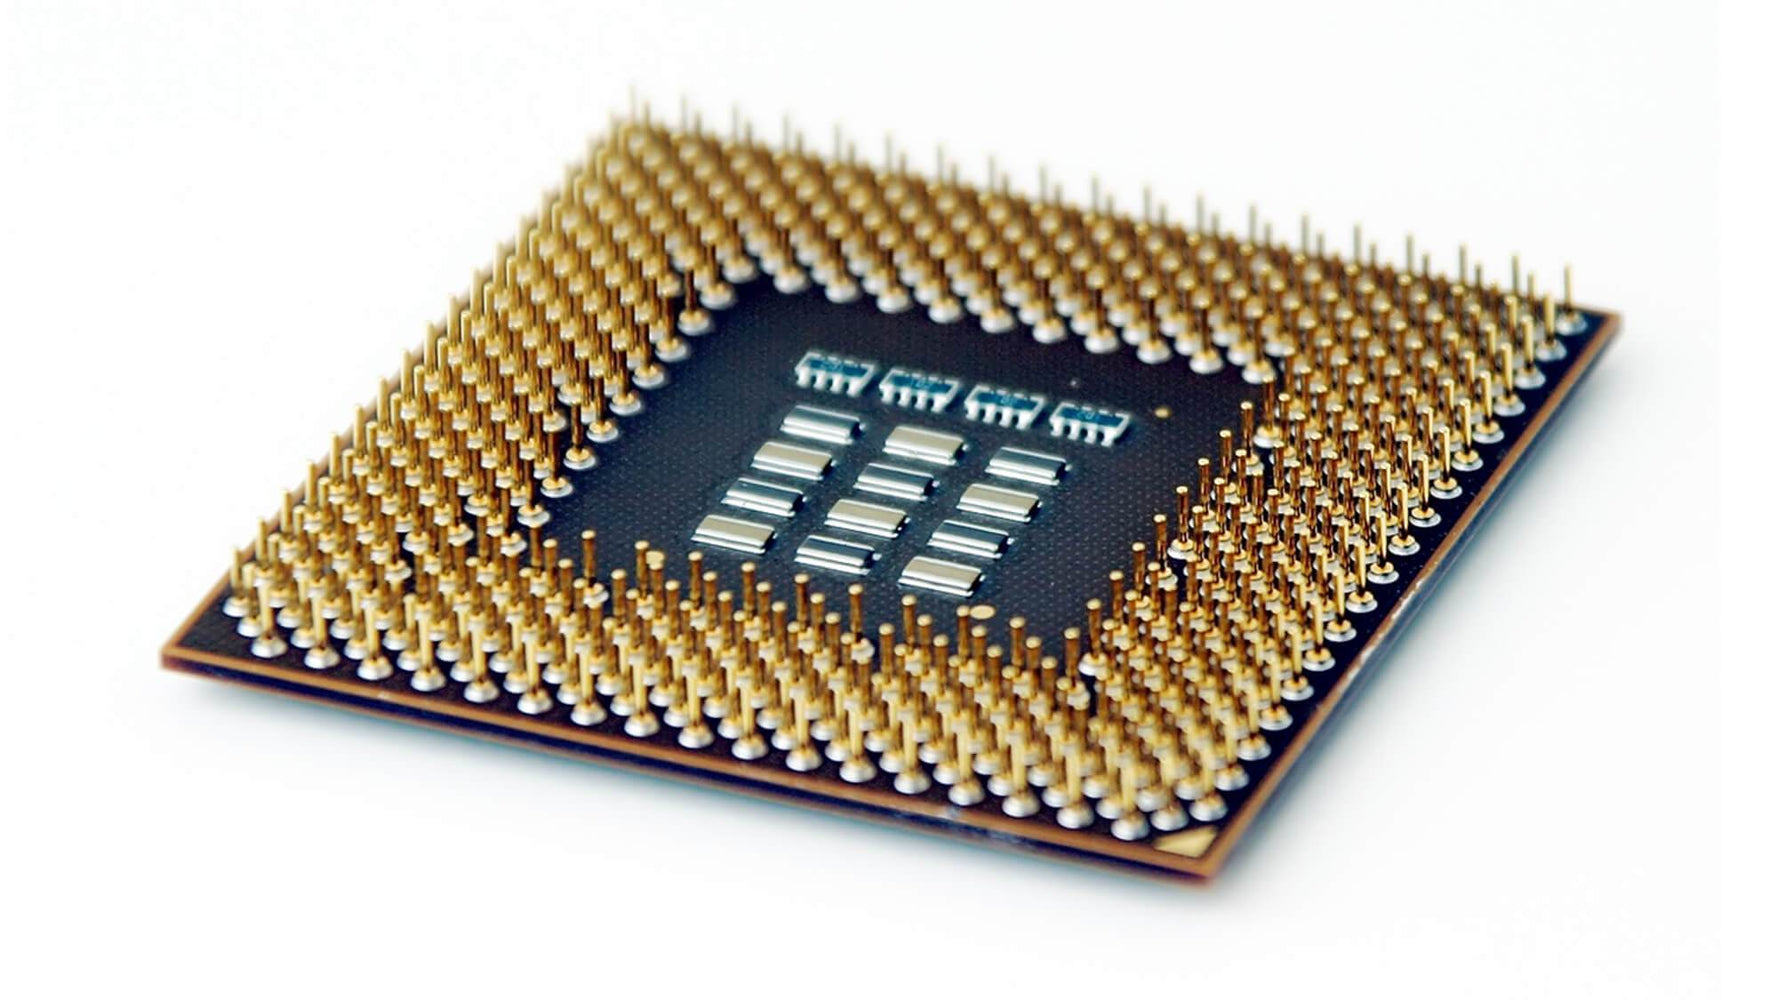 764013-L21 - HP 2.60GHz 9.60GT/s QPI 25MB L3 Cache Socket LGA2011-3 Intel Xeon E5-2660V3 10-Core Processor for ProLiant DL120 Gen9 Server